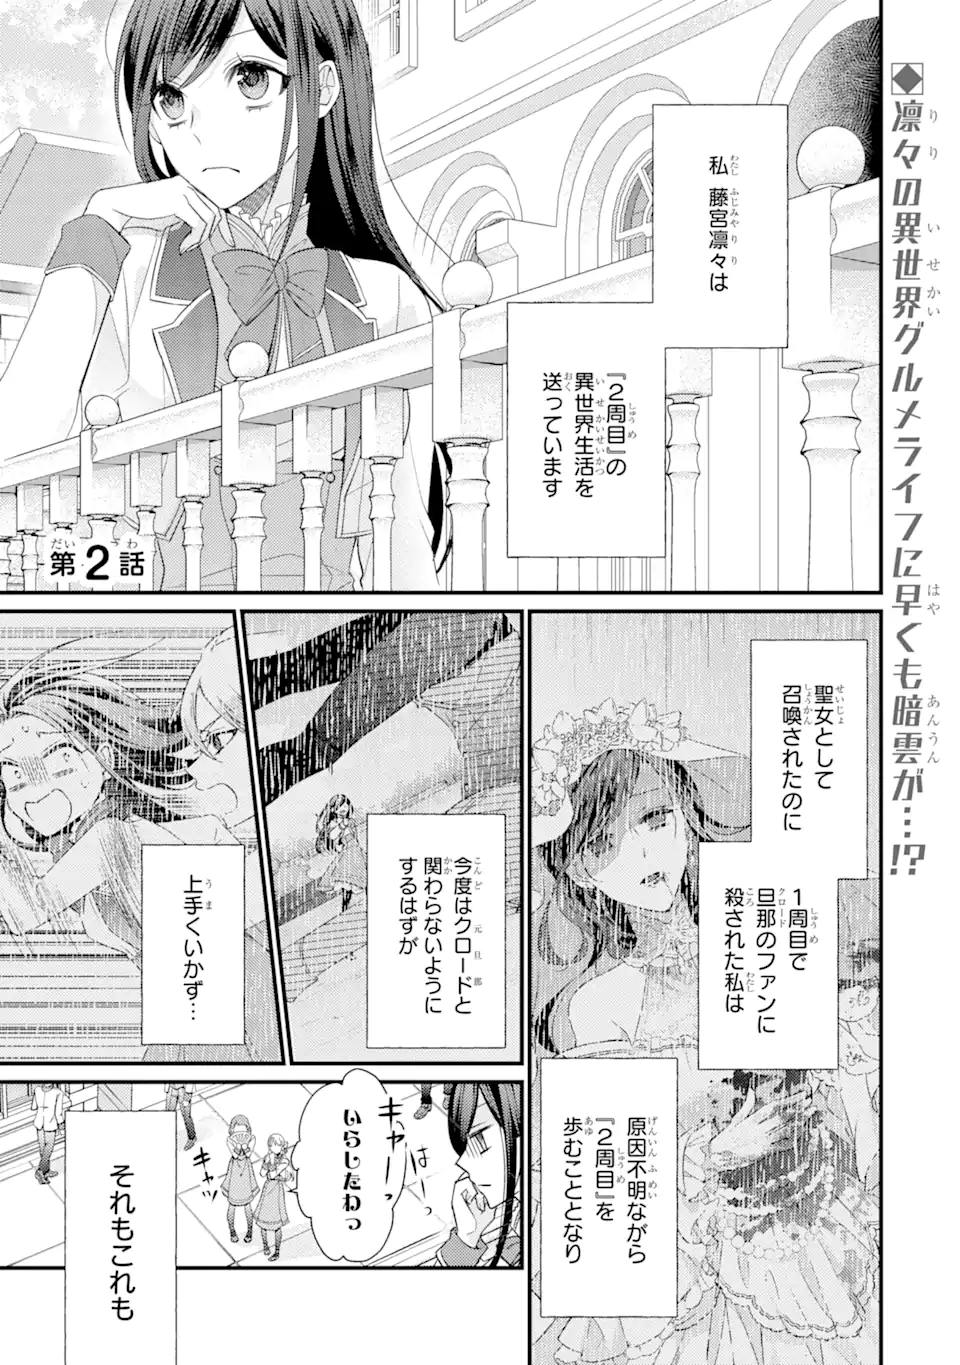 Kekkon suru Shinde Shimau no de, Kanst Seijo (Lv. 99) wa Meshi Tero Shimasu! - Chapter 2.1 - Page 1